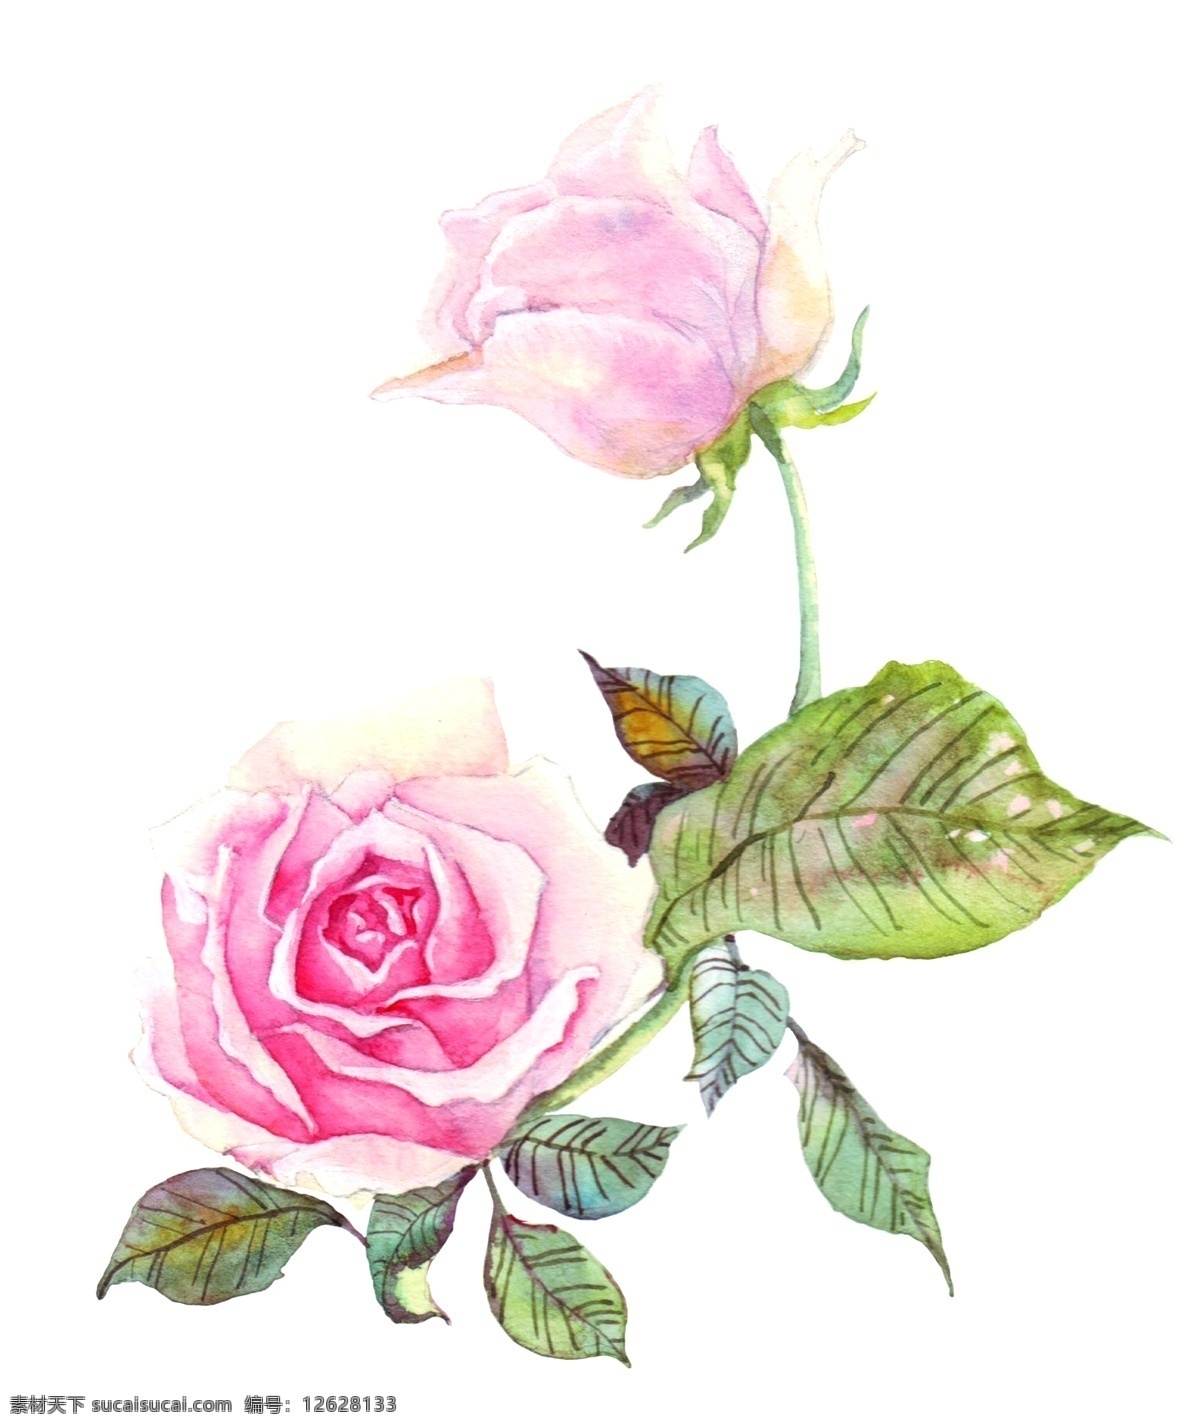 手绘 粉色 玫瑰 水彩 花卉 玫瑰的花卉 粉色的玫瑰 卡通插画 手绘插画 花朵 花瓣 鲜花 绽放 盛开 漂亮的玫瑰